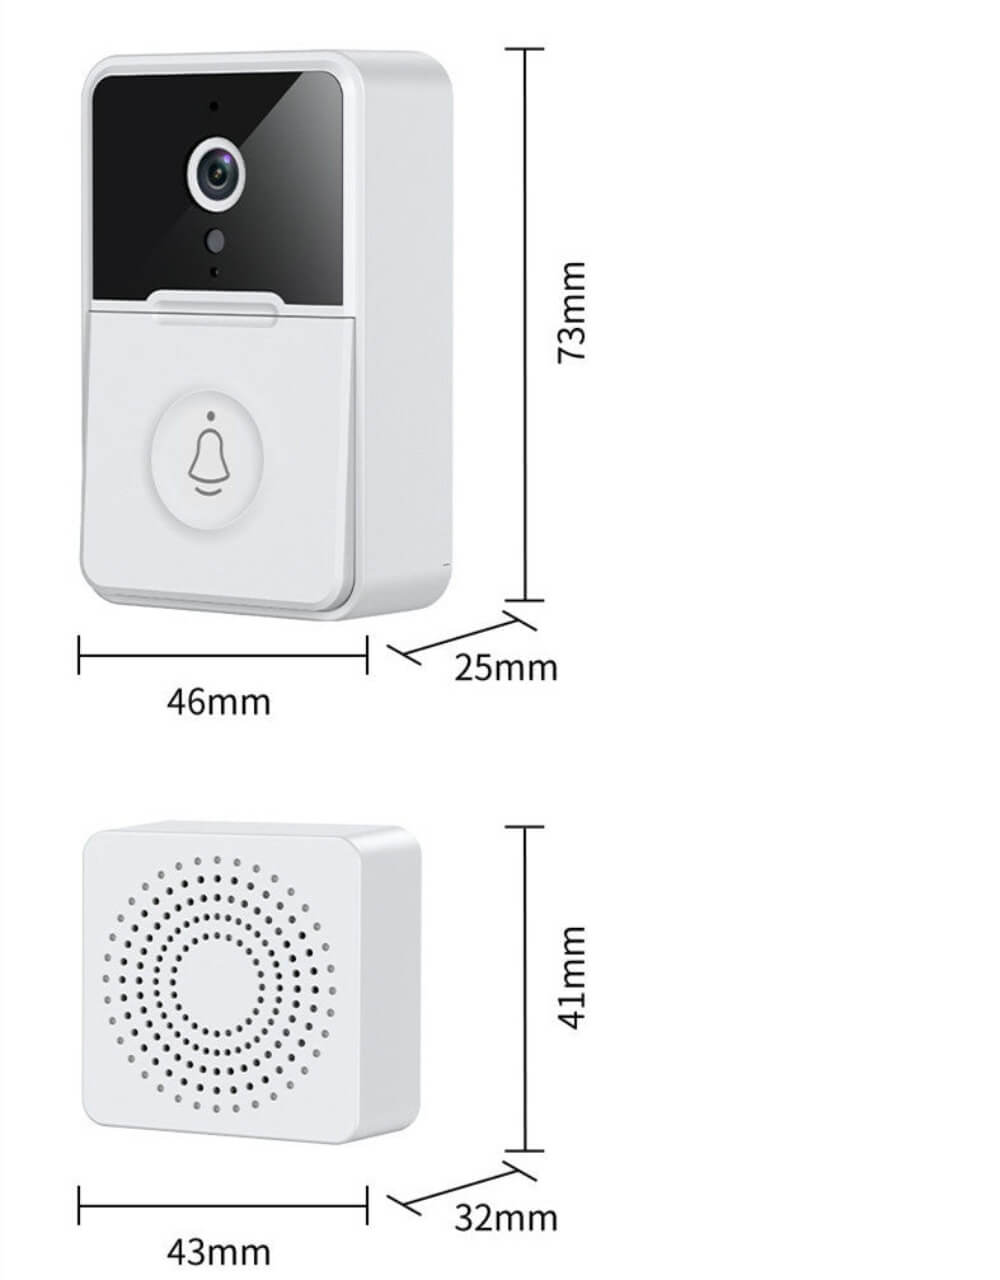 The door bell wireless cameras dimensions. Outdoor unit - 46mm wide, 25mm deep and 73mm in height. Indoor Unit - 43mm wide, 32mm deep and 41mm in height.